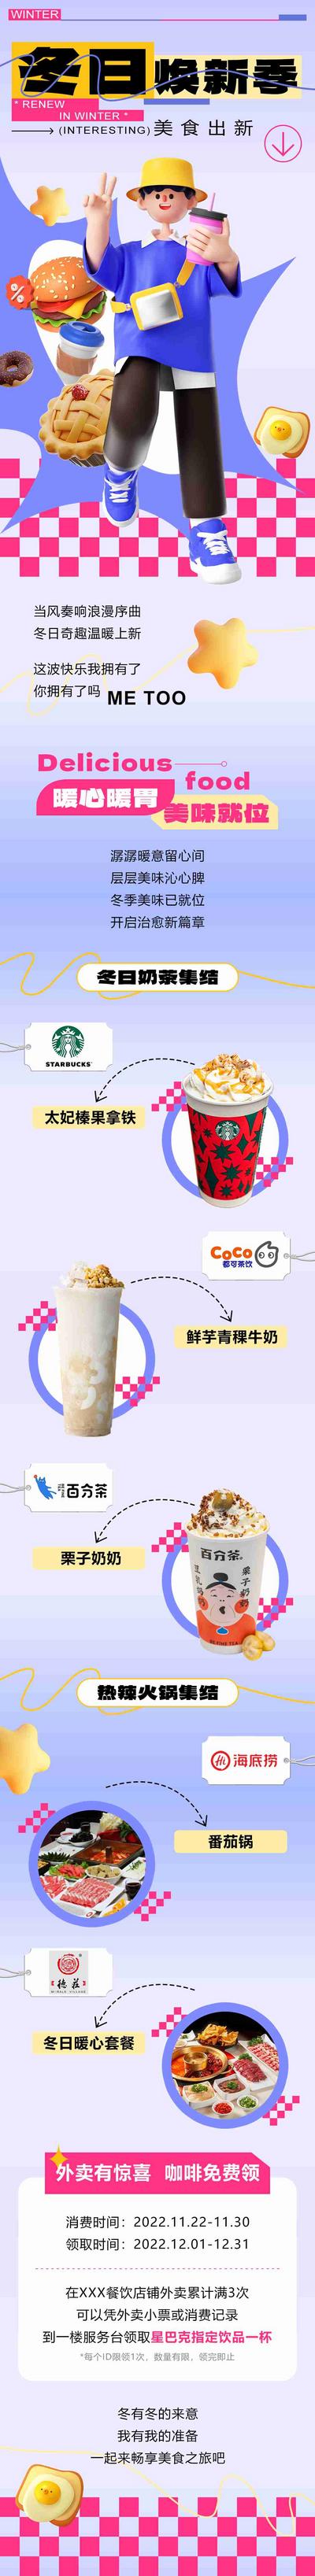 【南门网】长图 美食 专题设计 推文 冬天 奶茶 简约 商城 宣传 推广